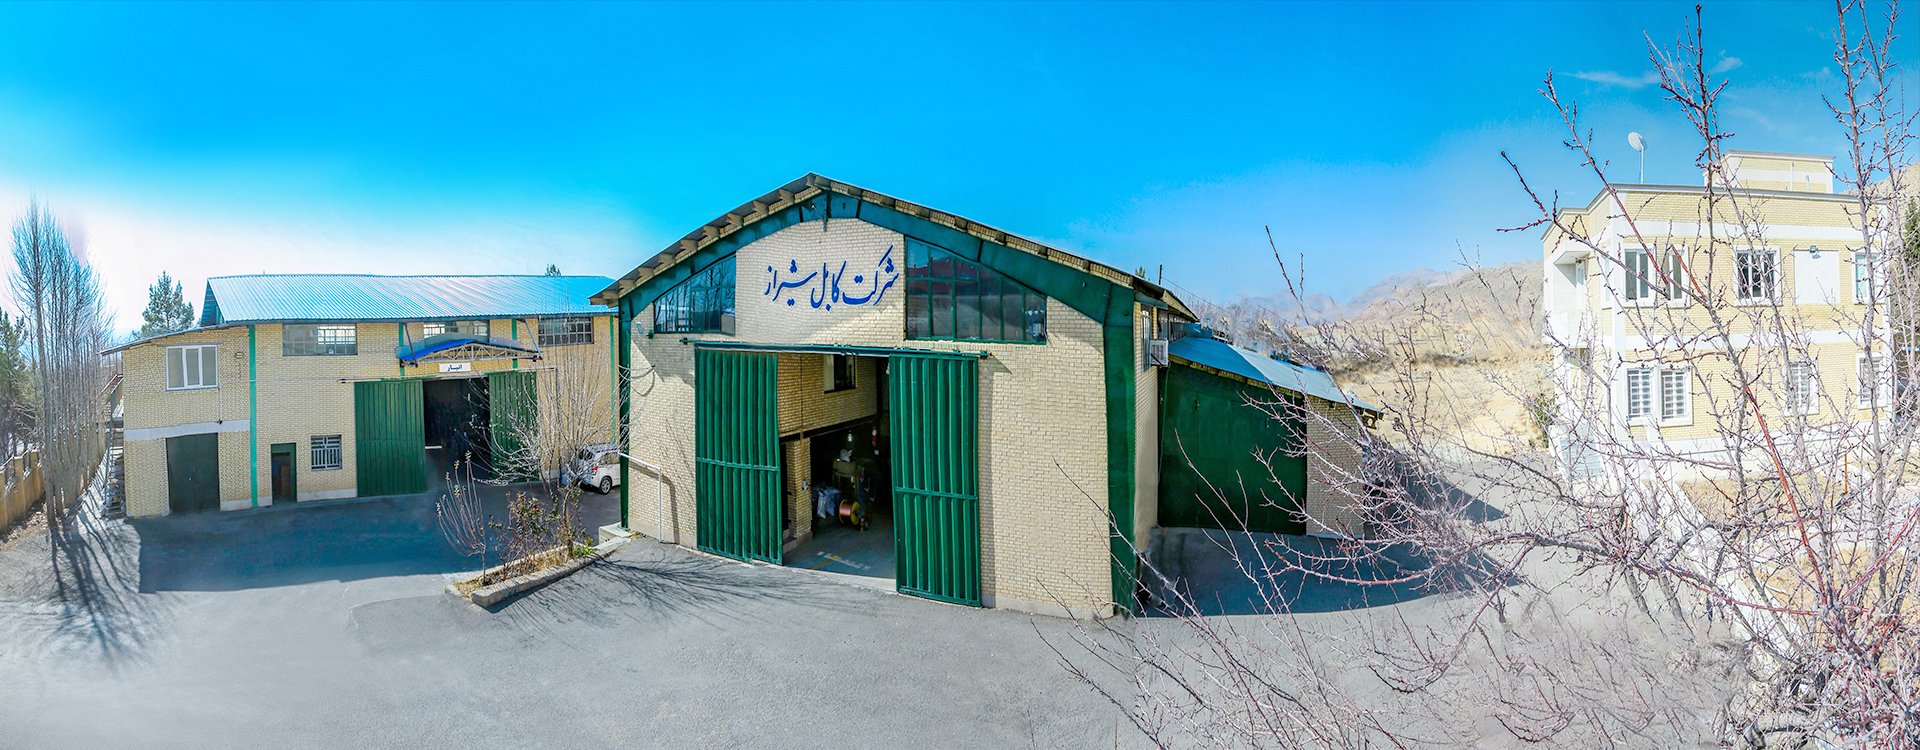 شرکت تولیدی کابل شیراز(شیرکاب)